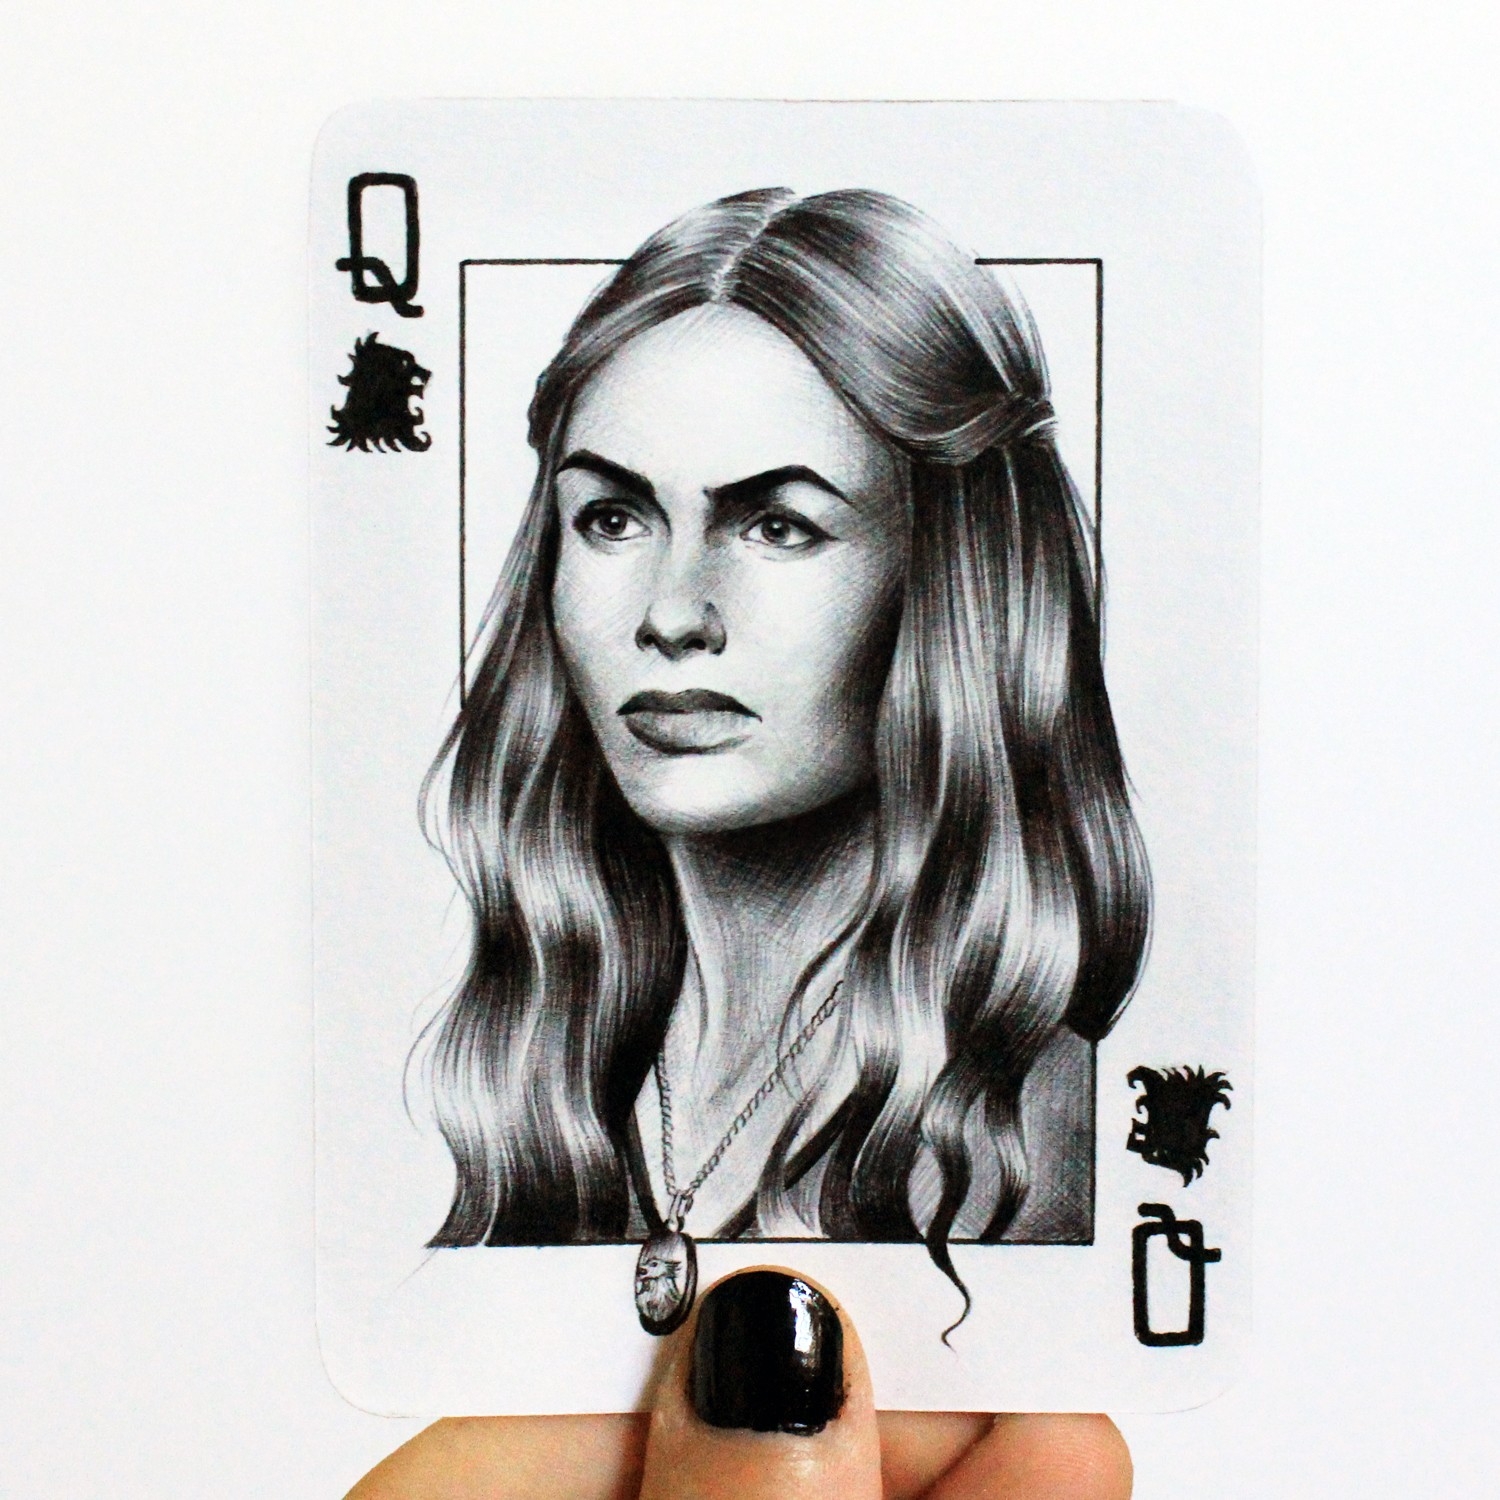 Juego de Tronos: Una artista planea crear una baraja de cartas con sus personajes